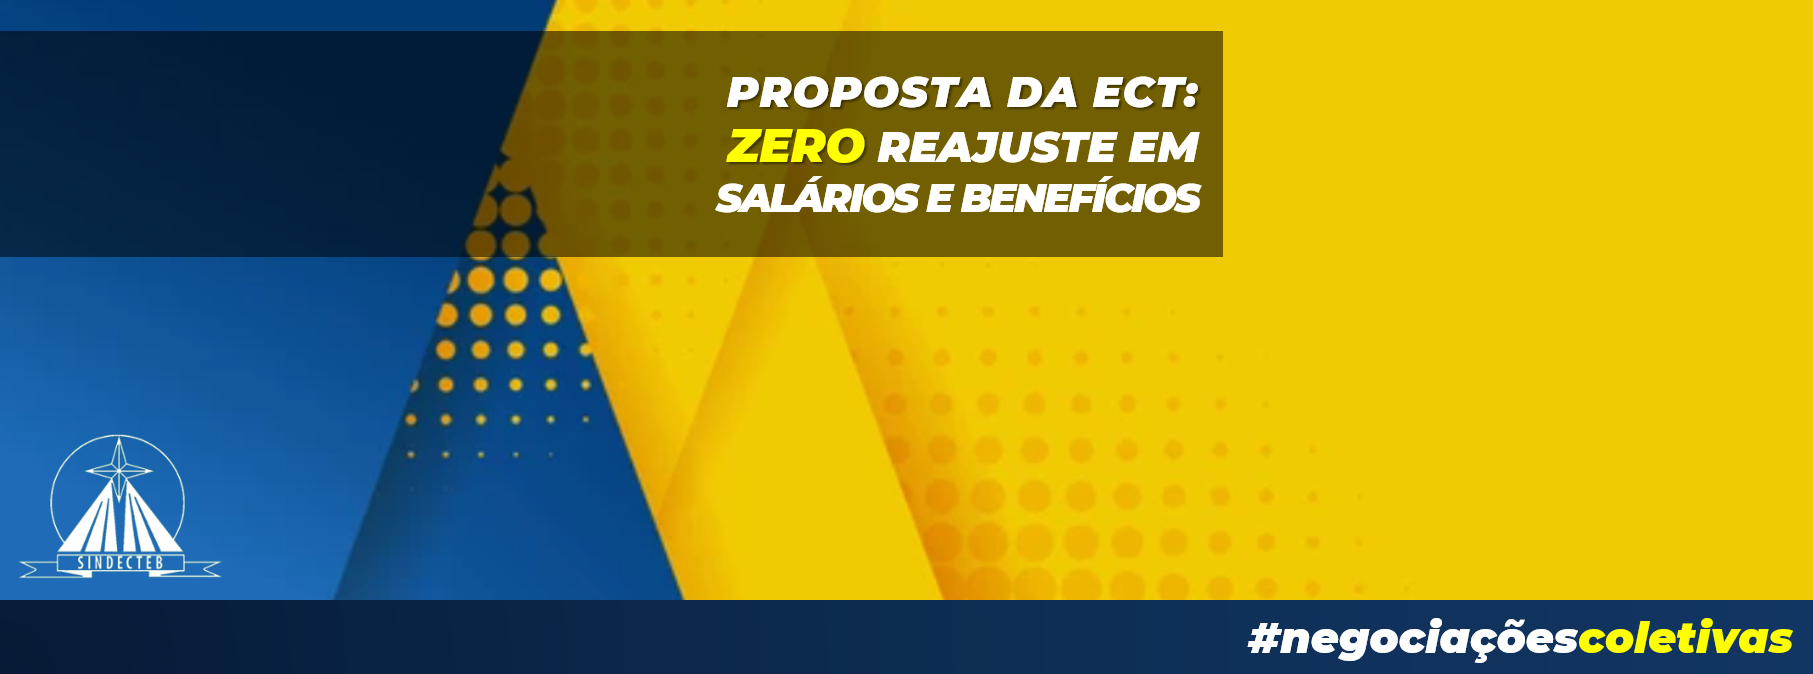 ECT apresenta proposta: zero reajuste em salário e benefícios